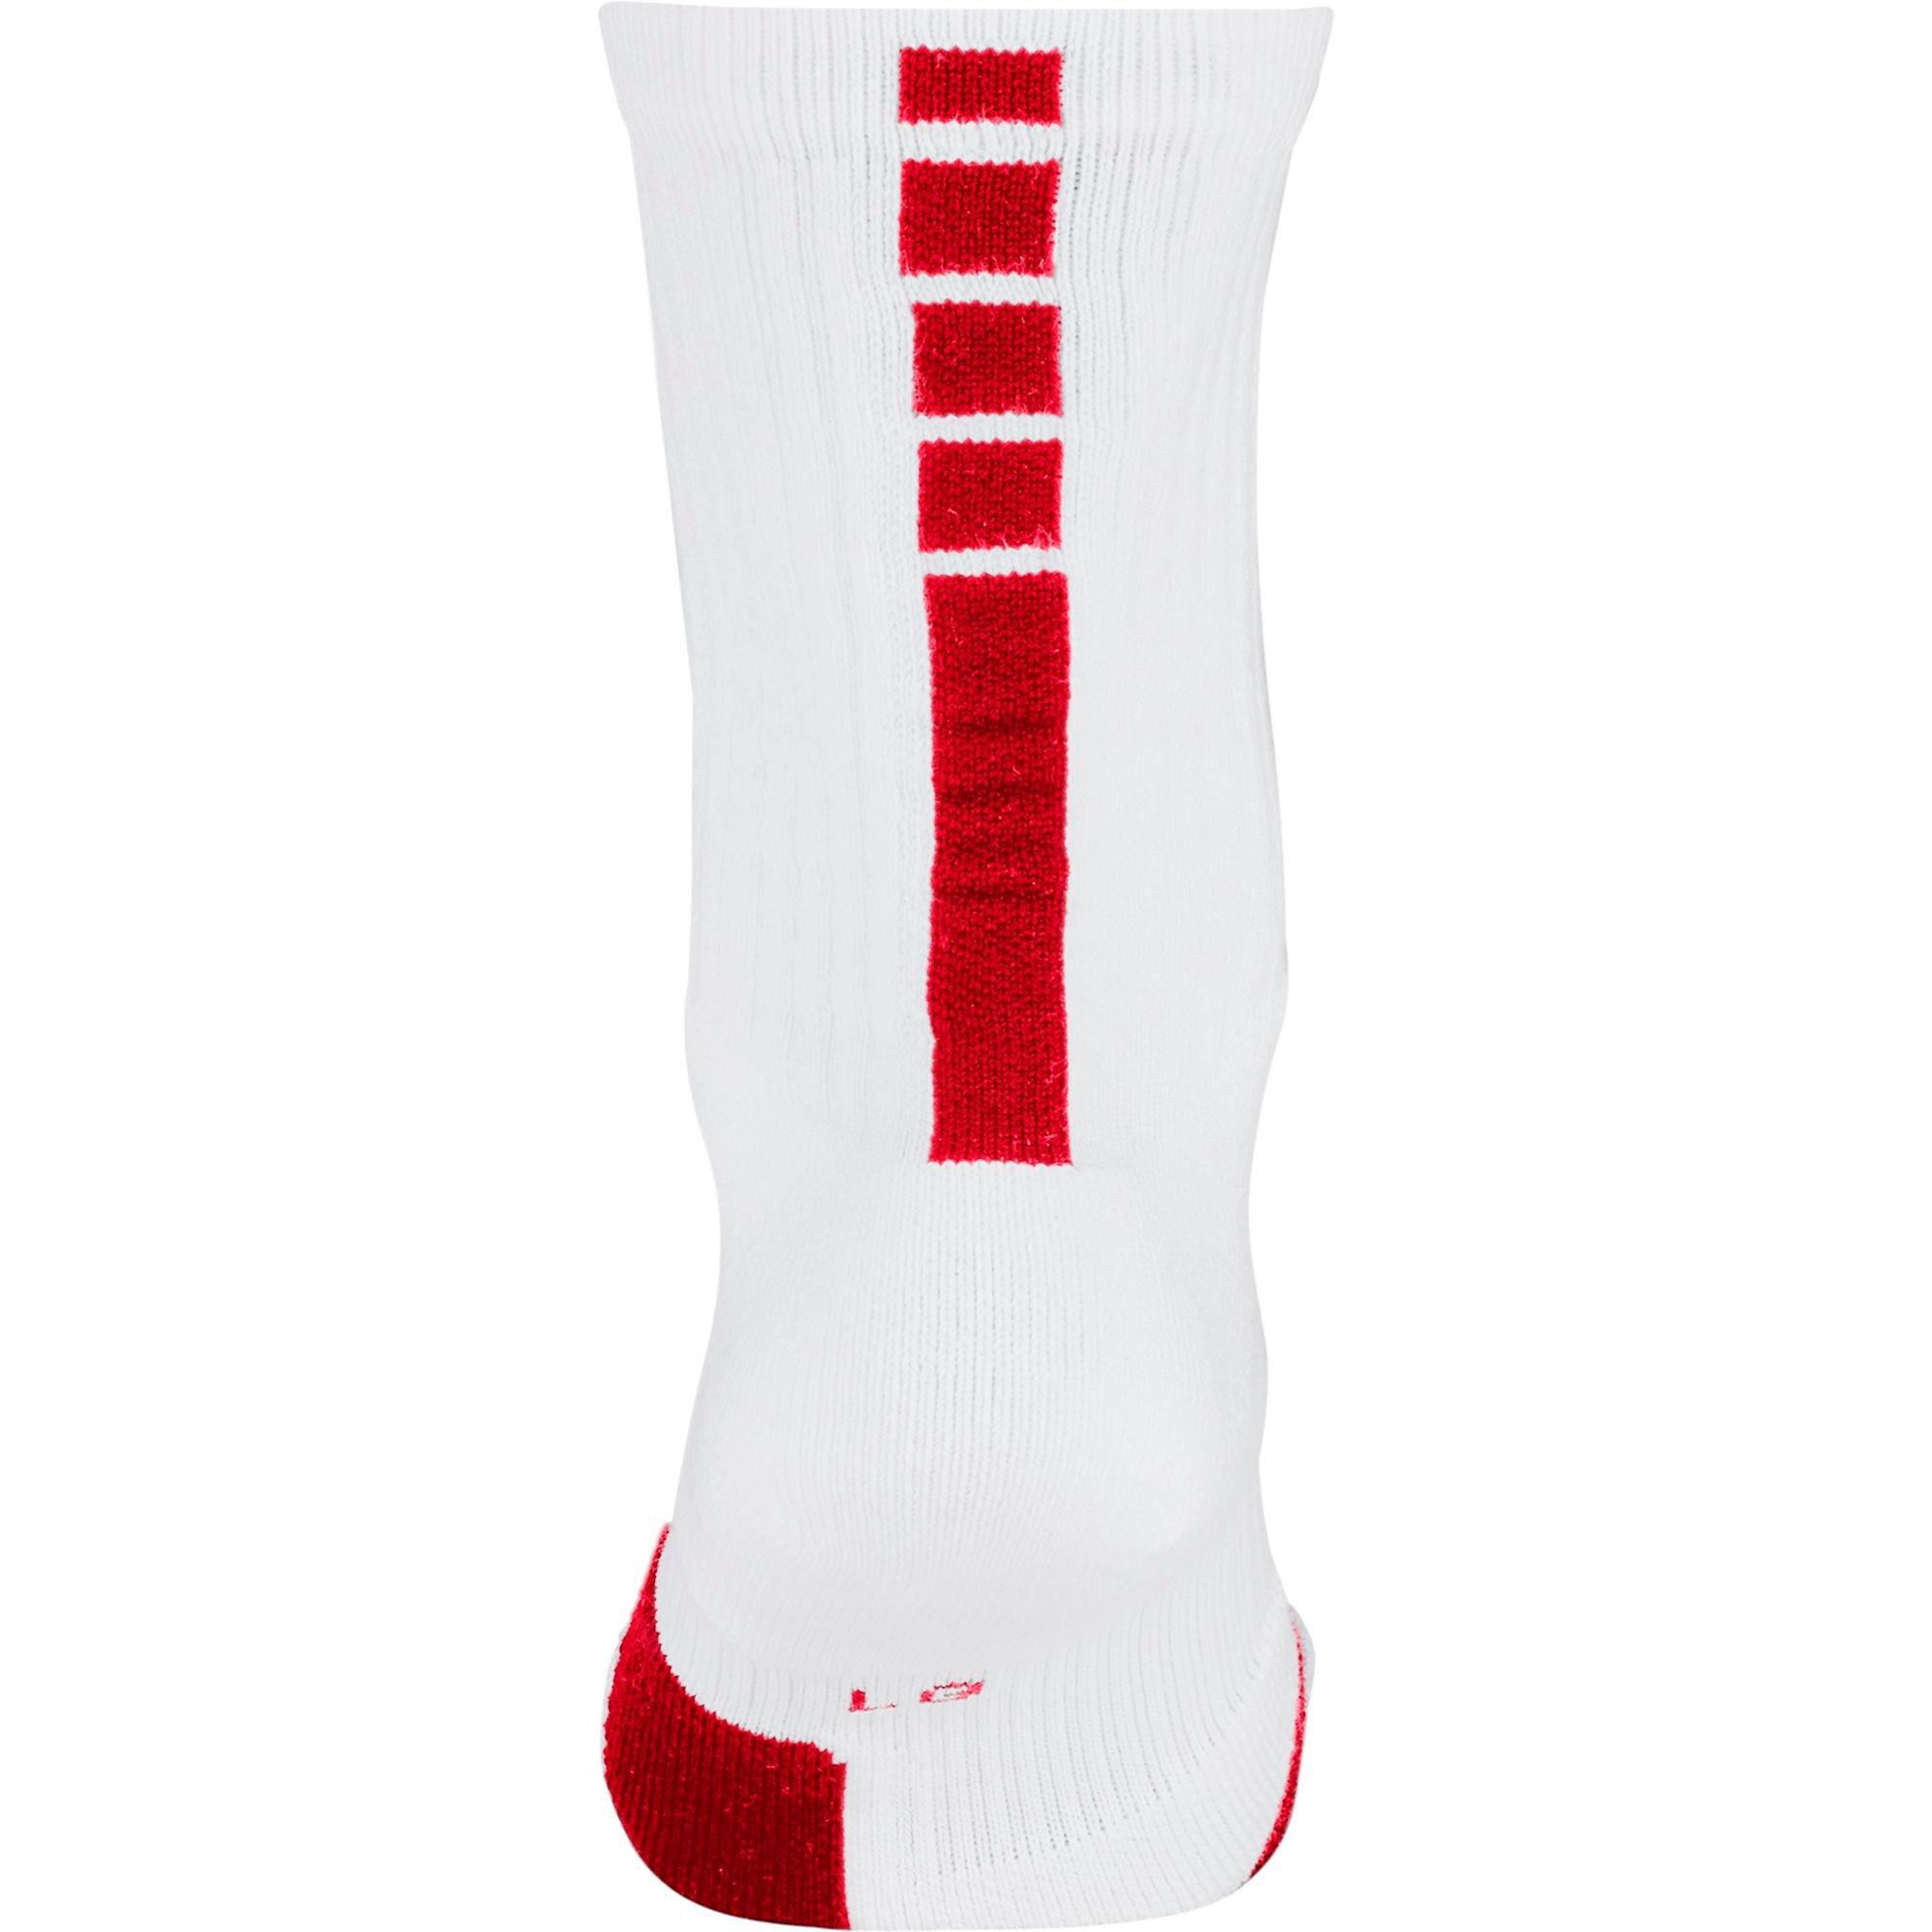 Nike Elite Unisex Crew Basketball Socks - White/Red - Hibbett